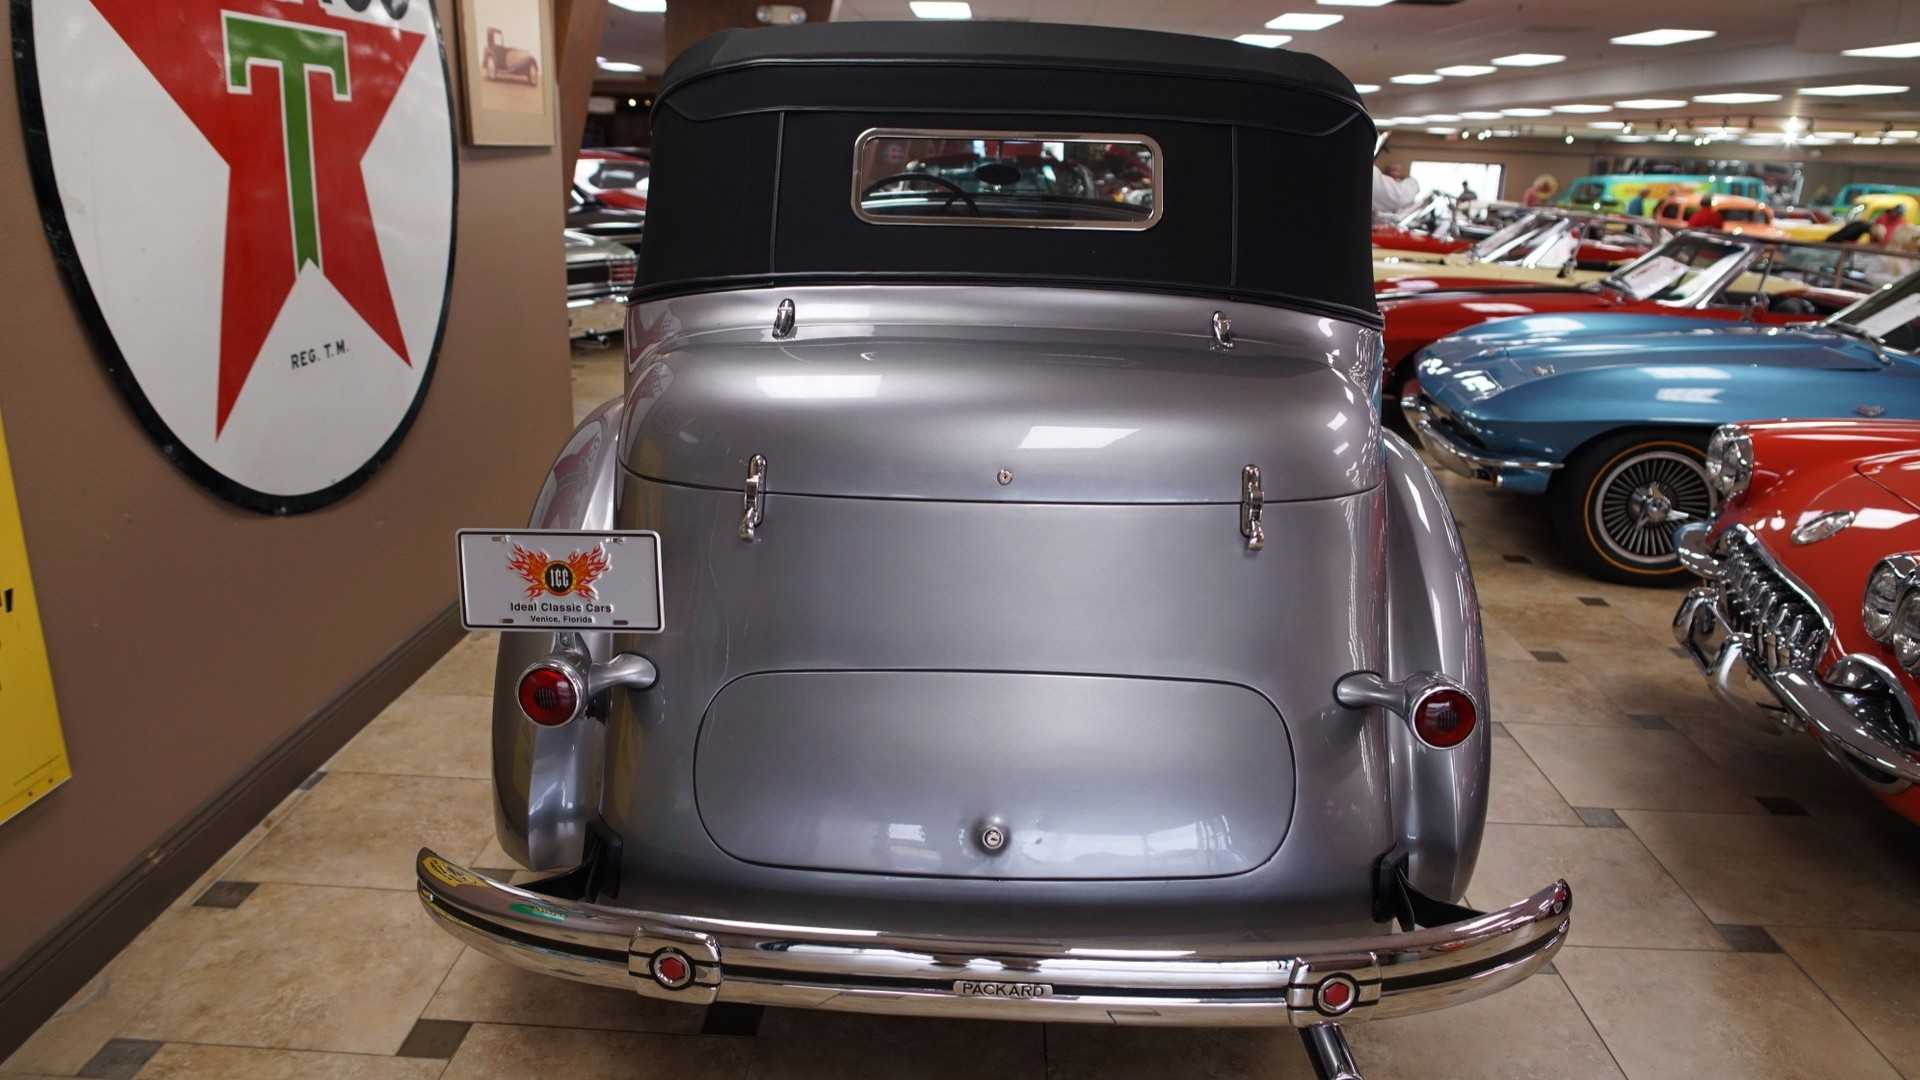 Packard 120 B Wallpapers